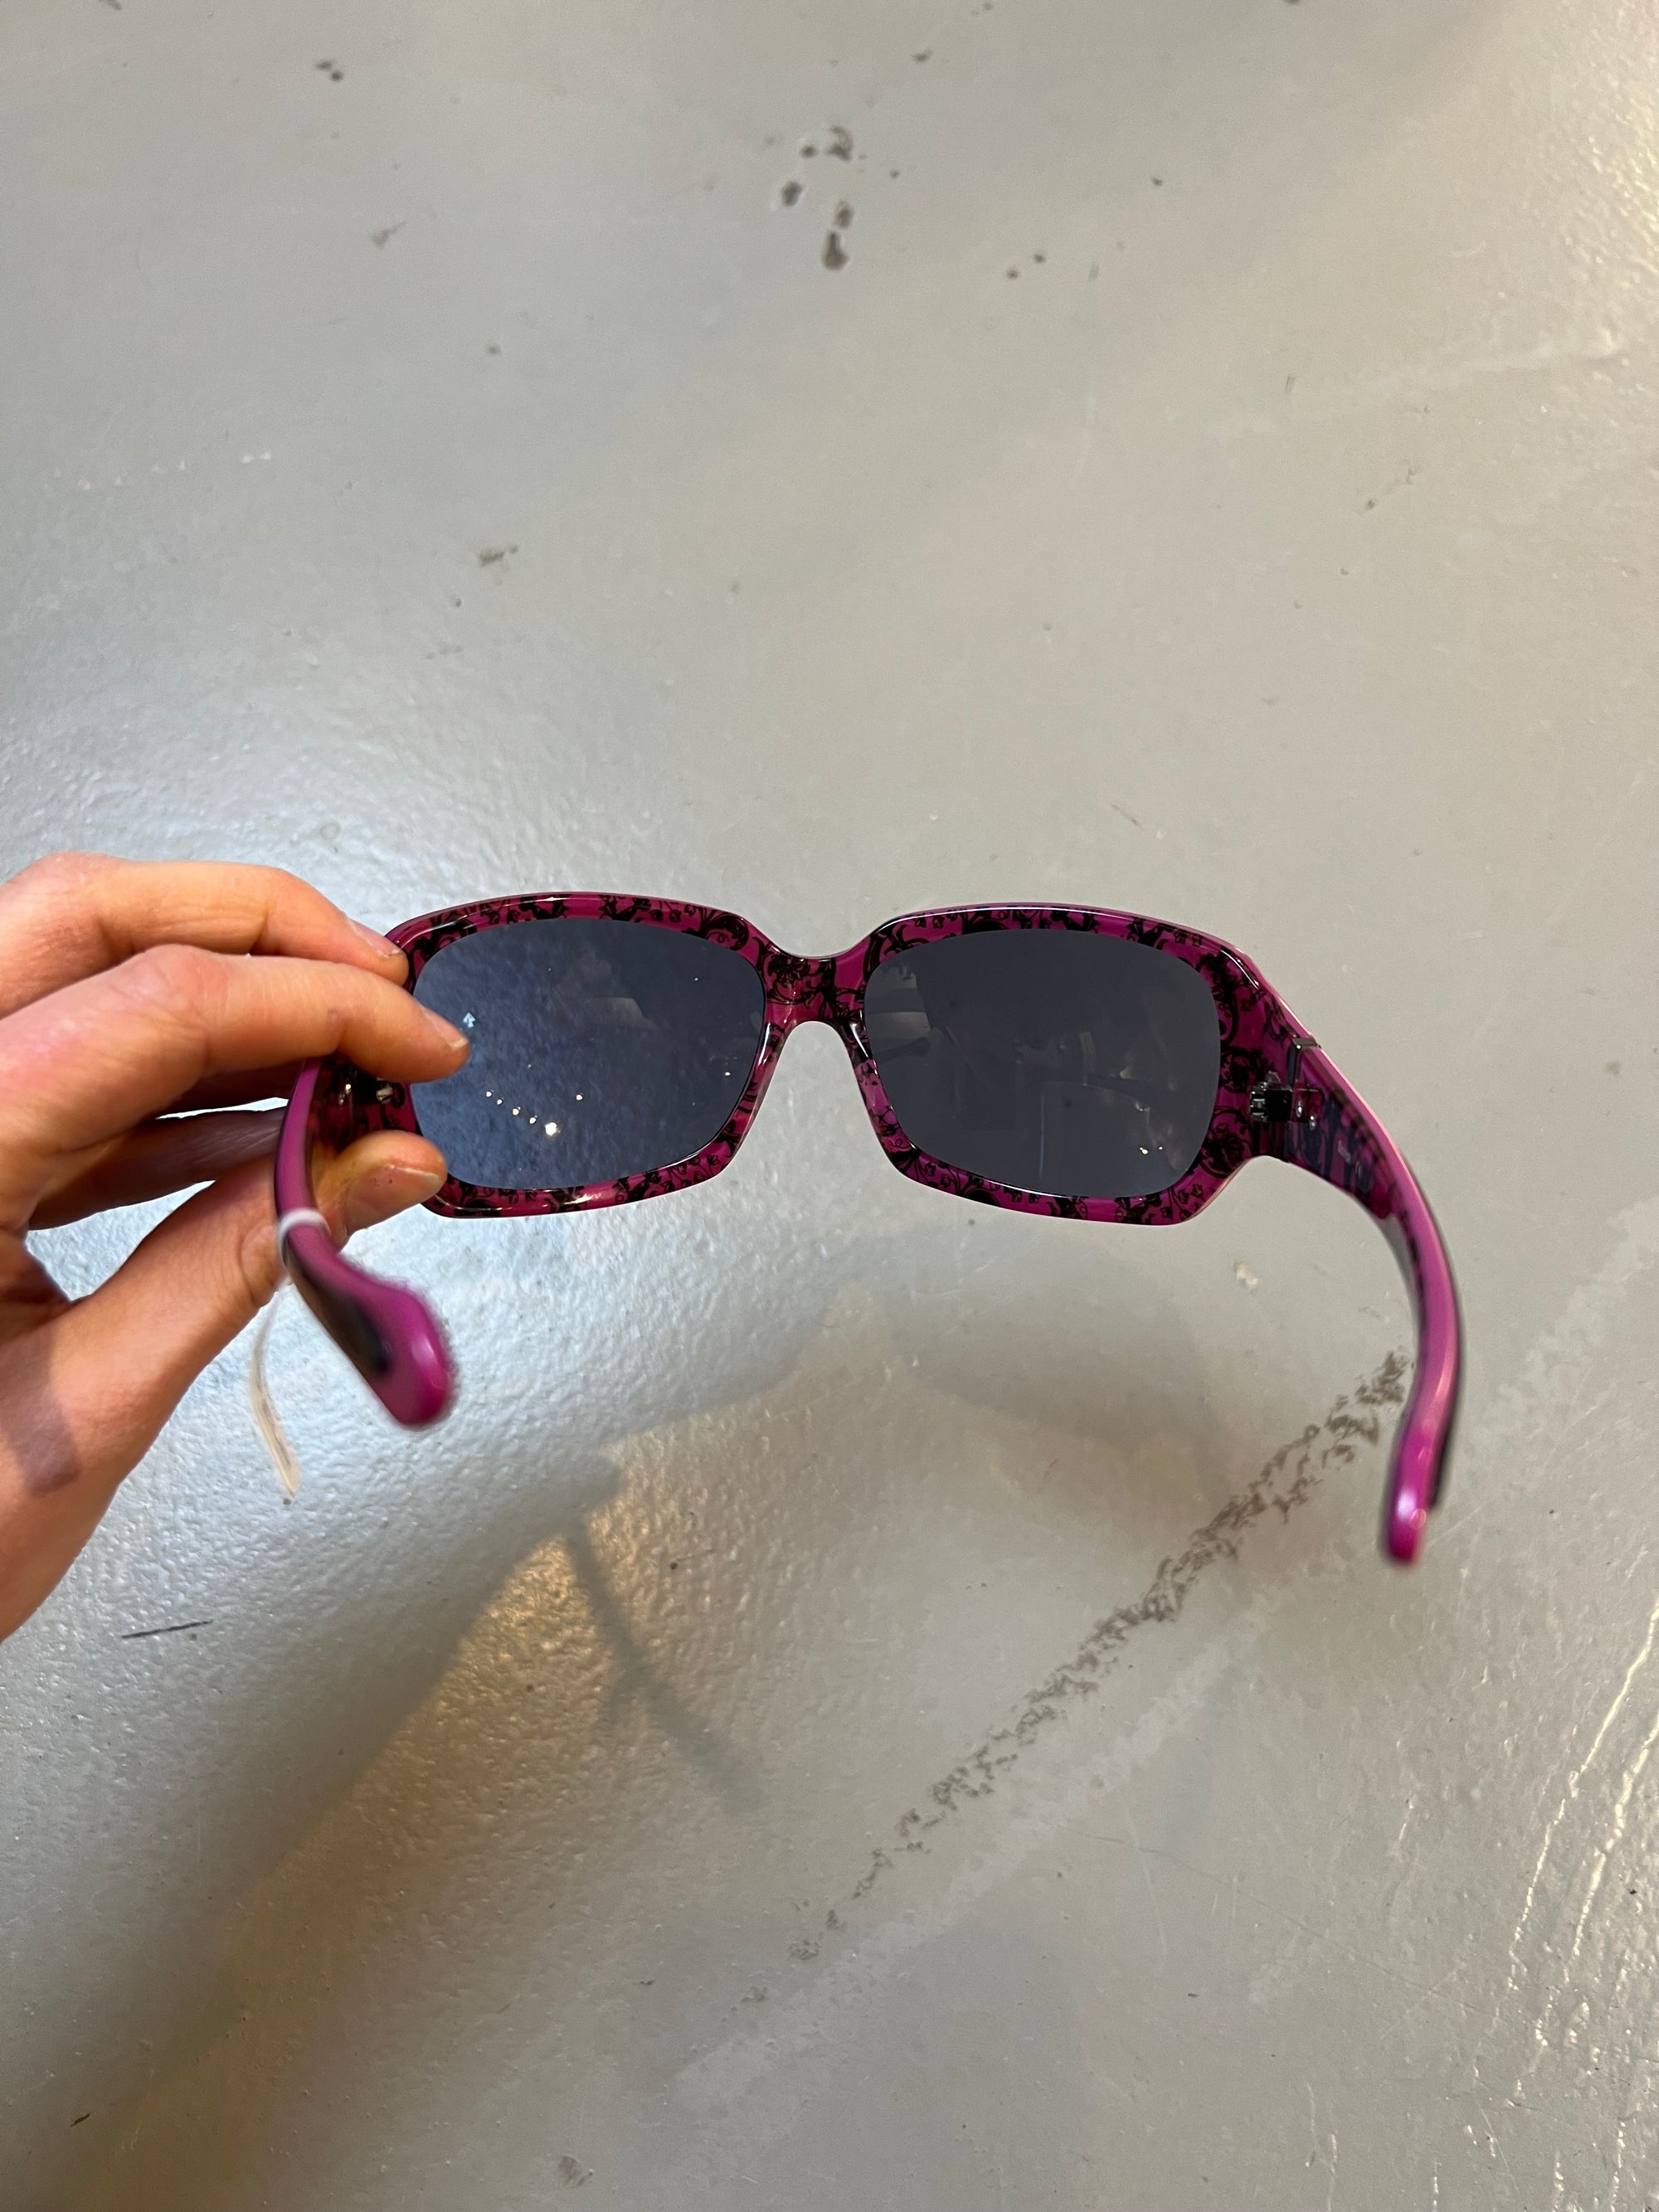 Produkt bild der Oakley Sunglasses Black Pink von innen